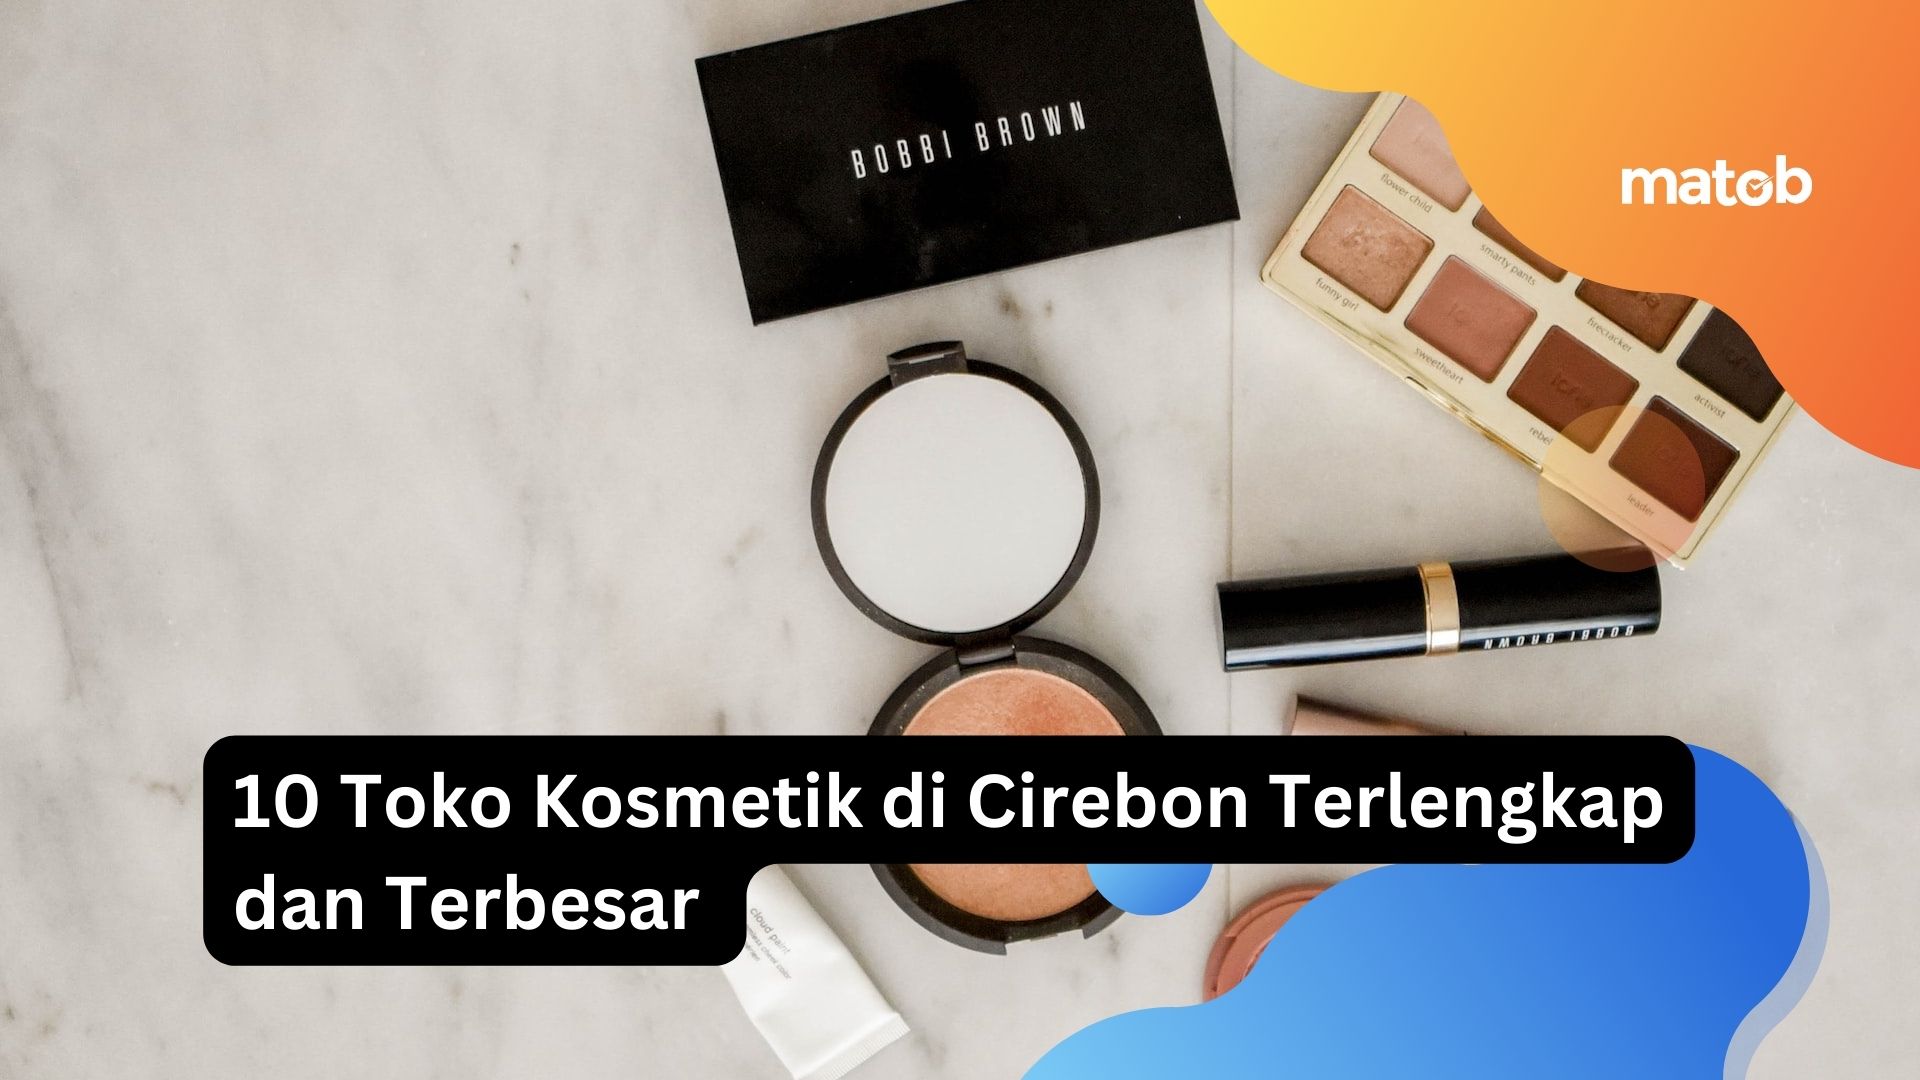 10 Toko Kosmetik di Cirebon Terlengkap dan Terbesar